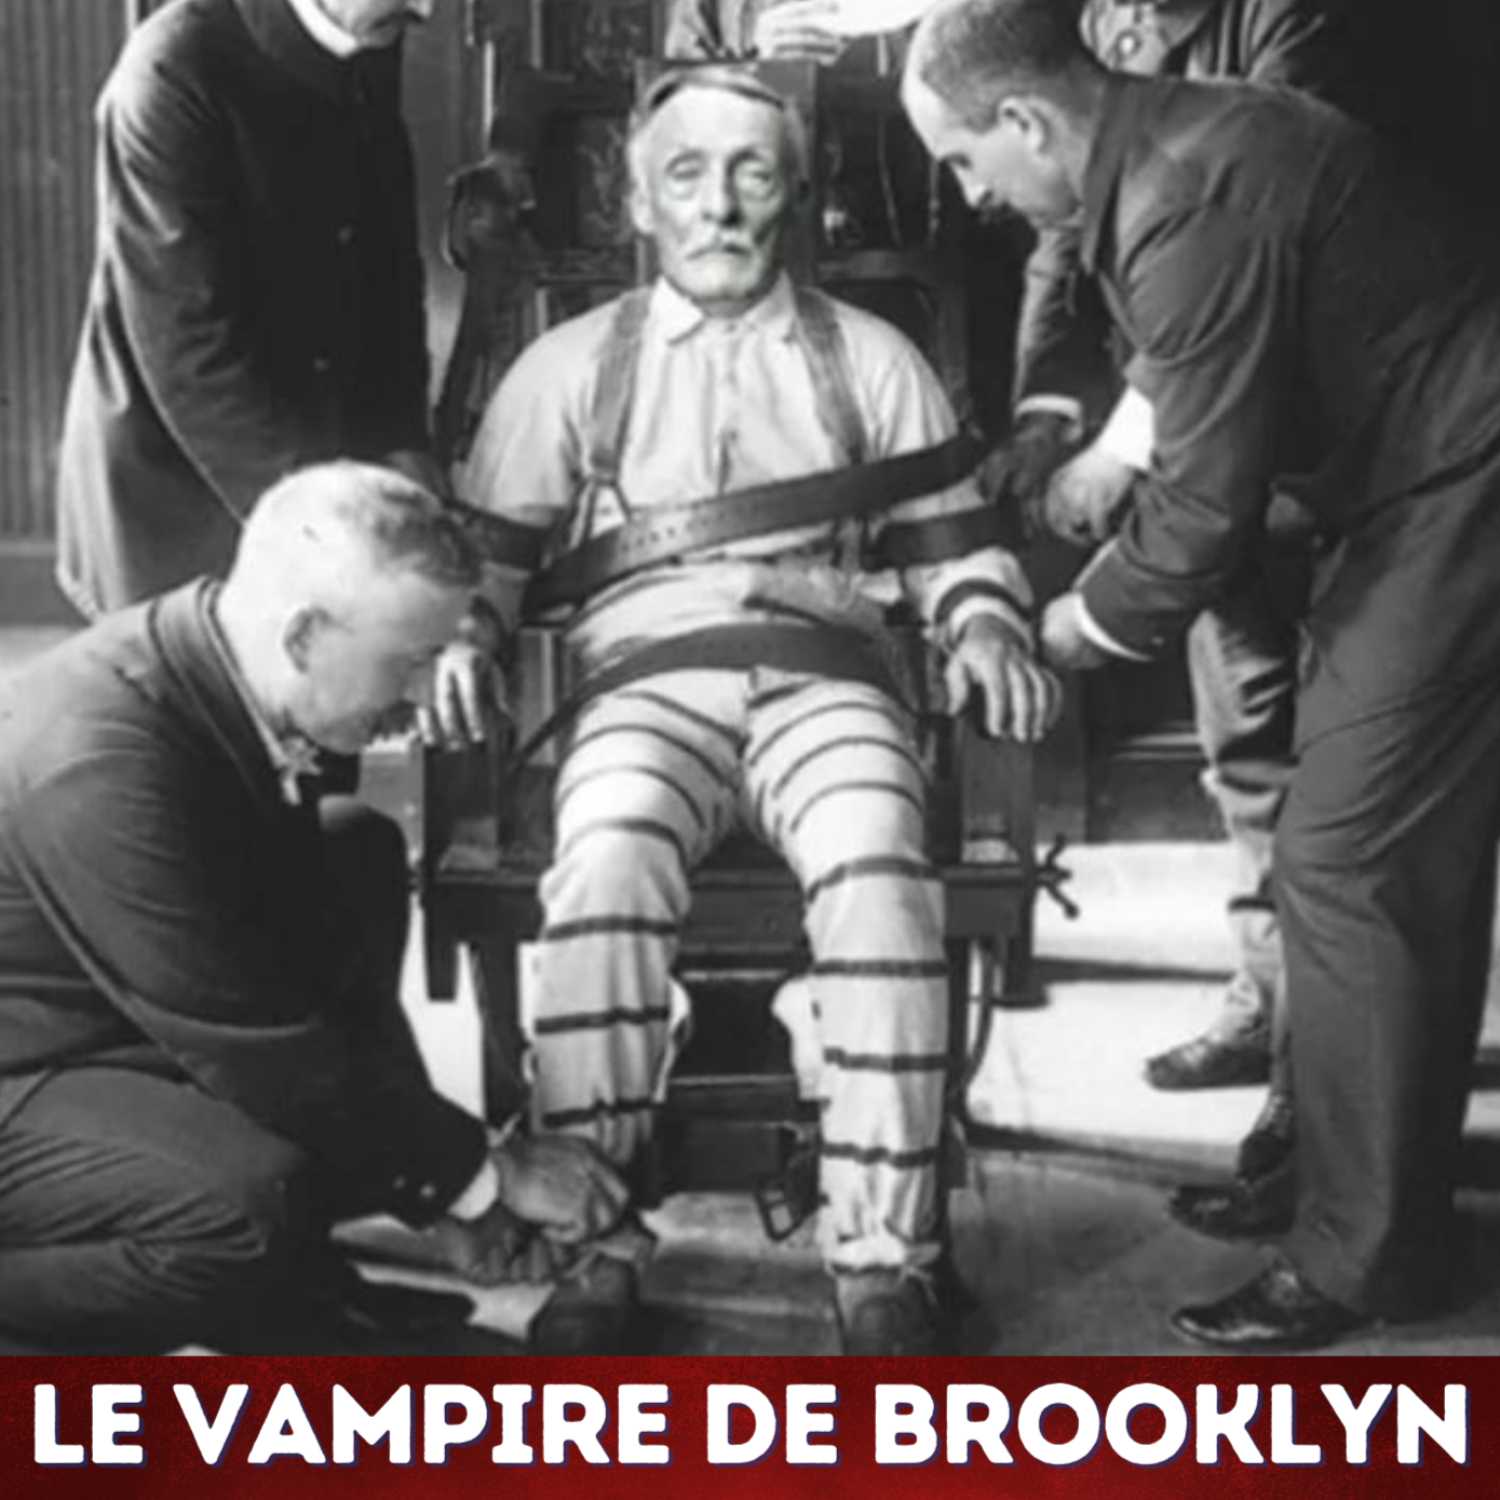 Le vampire de Brooklyn